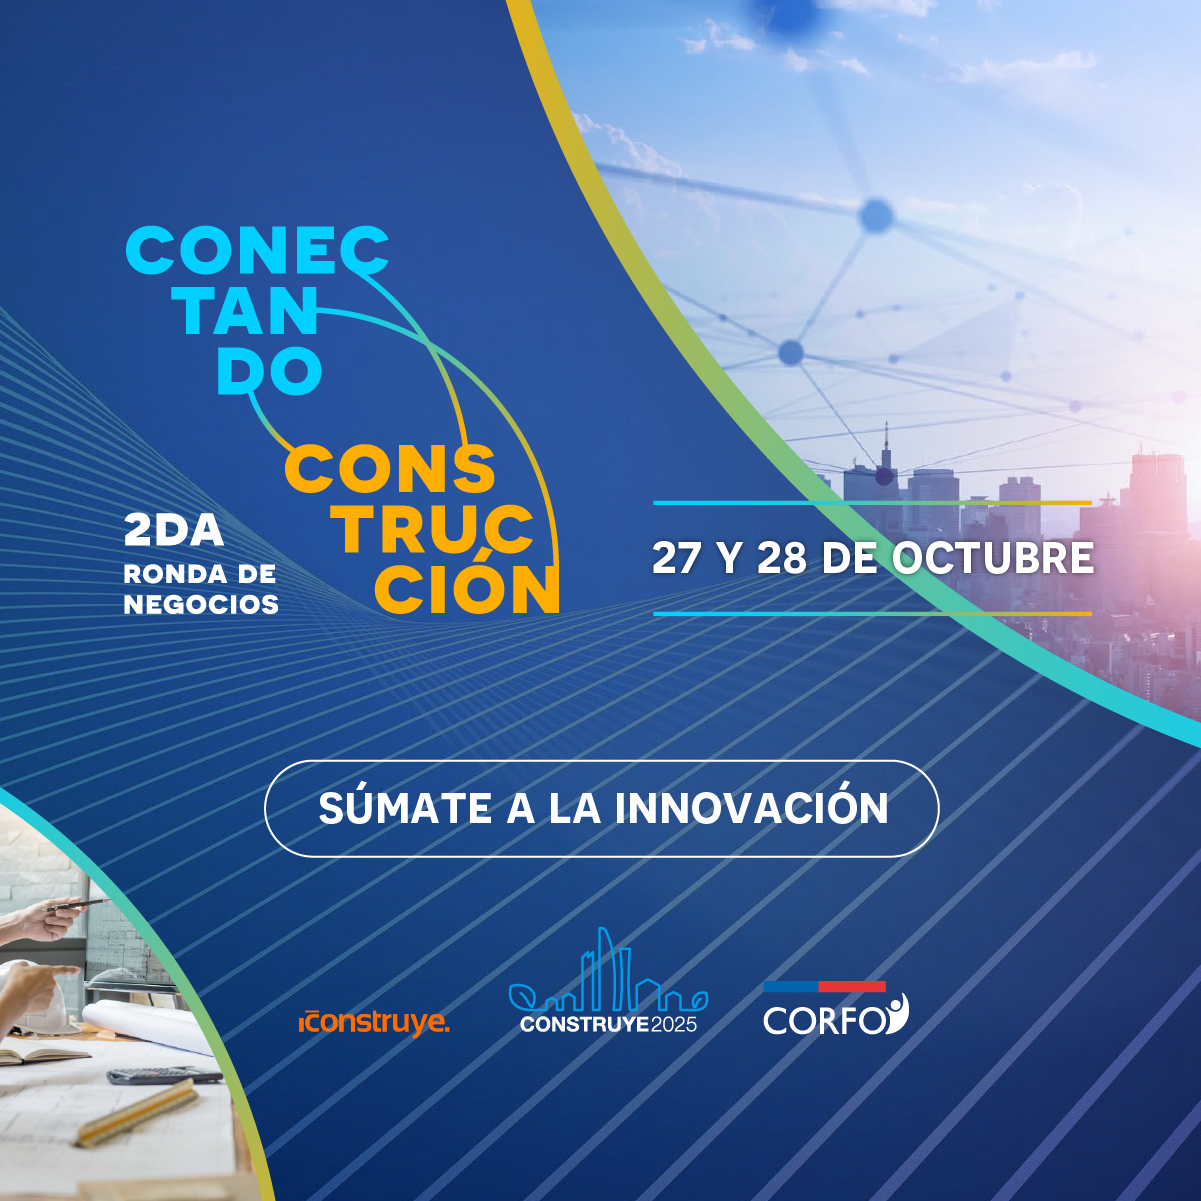 Construye2025 e iConstruye se unen para promover negocios de industrialización, sustentabilidad, digitalización y startup